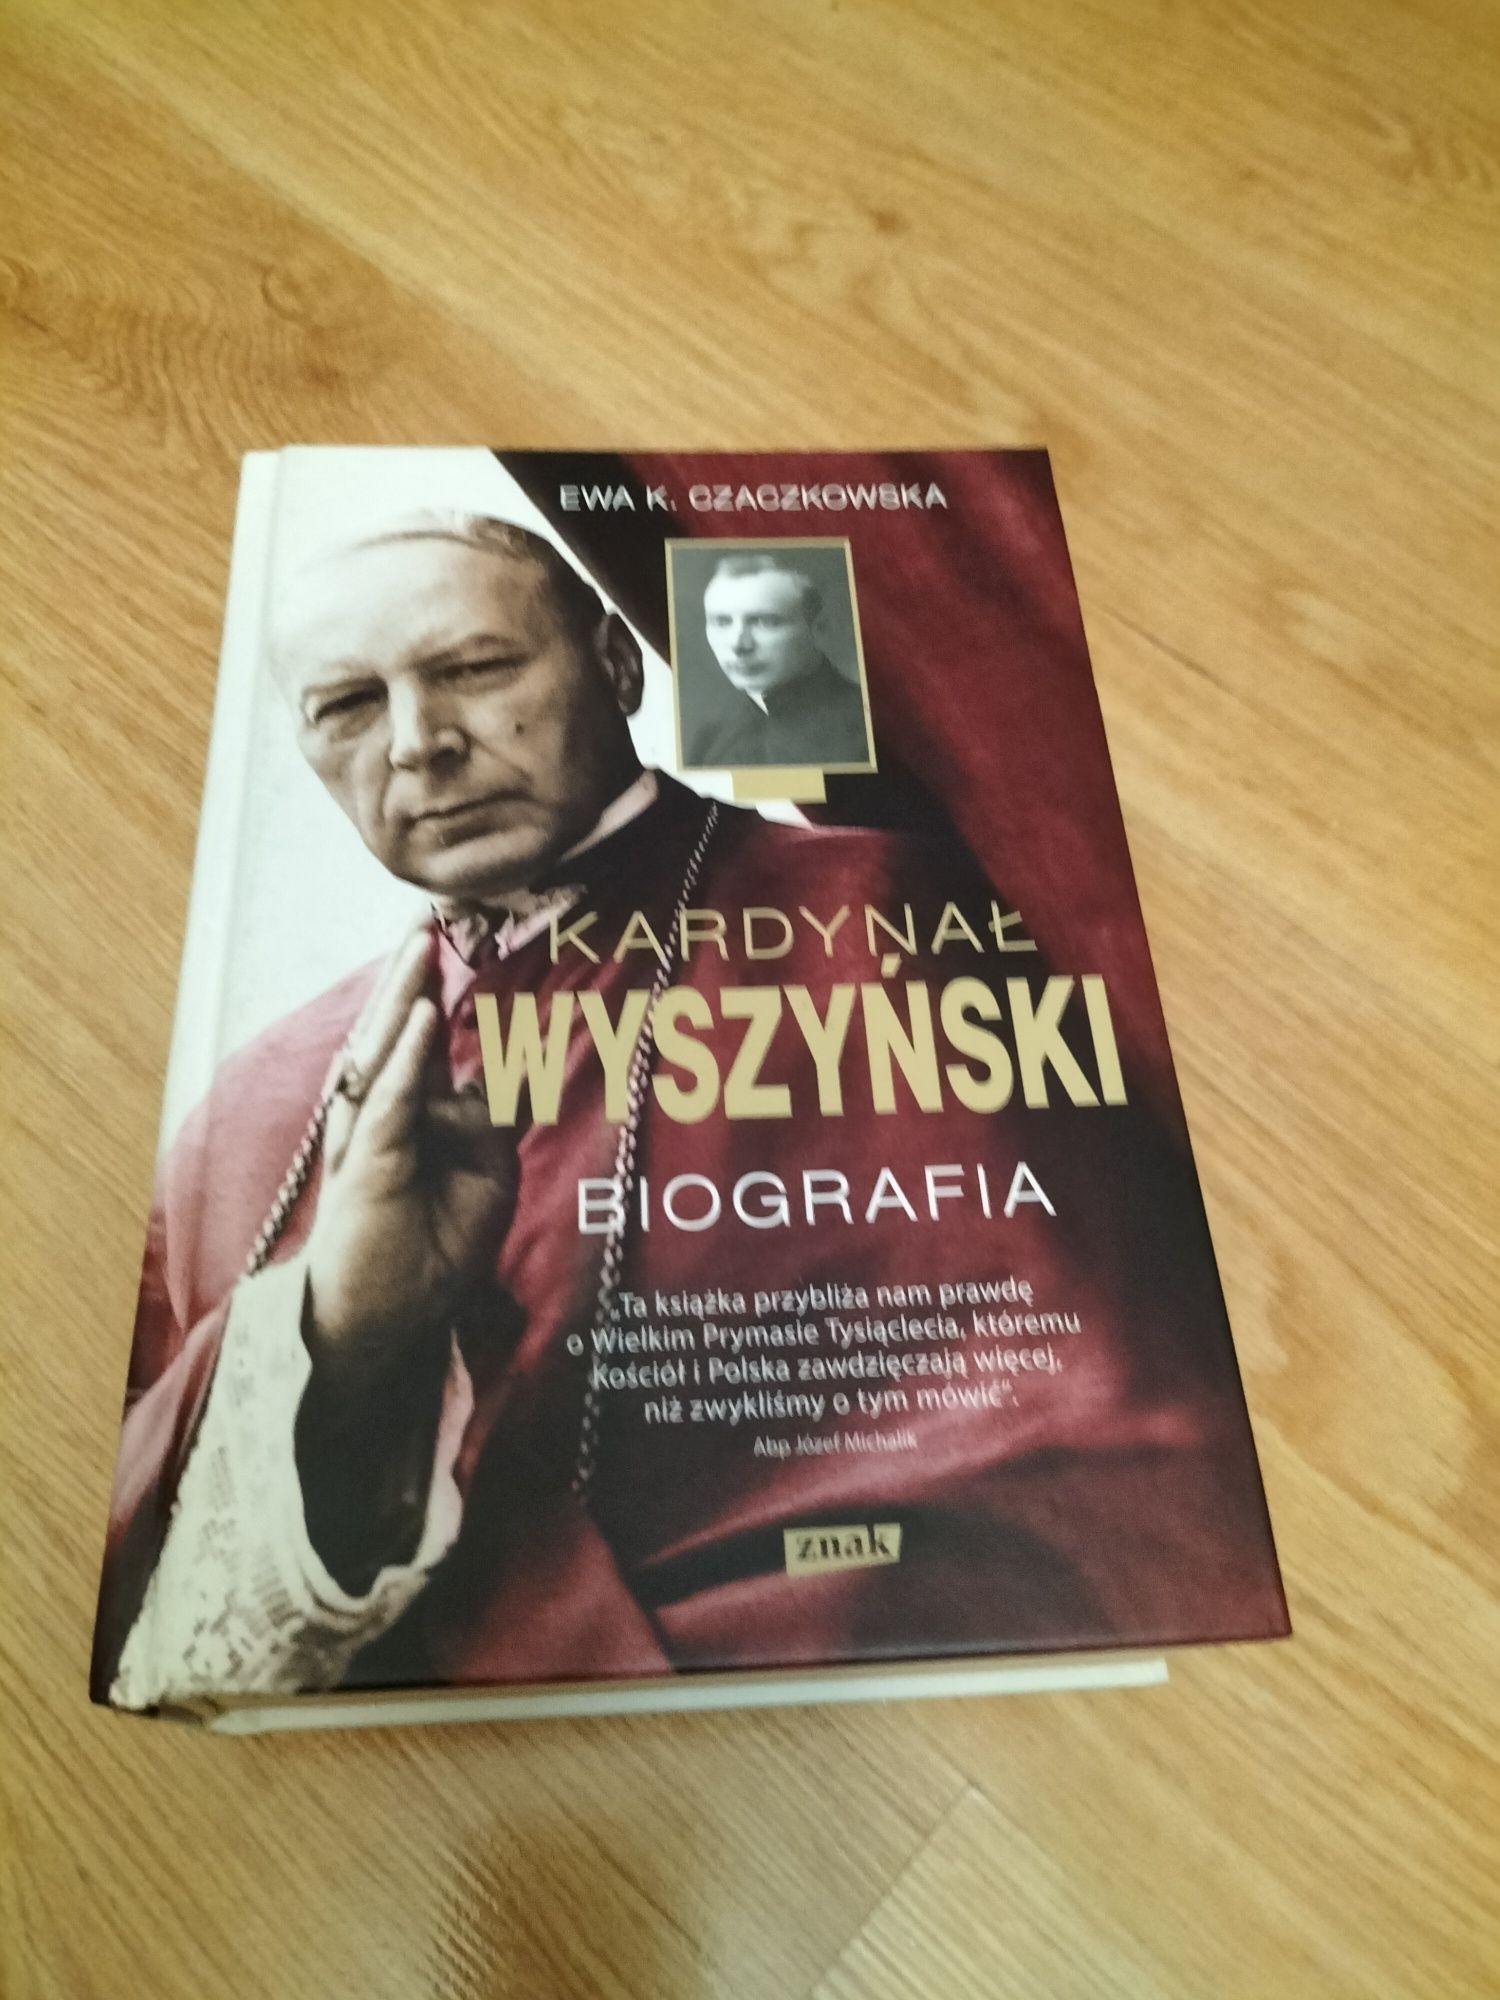 Biografia Kardynał Wyszyński.